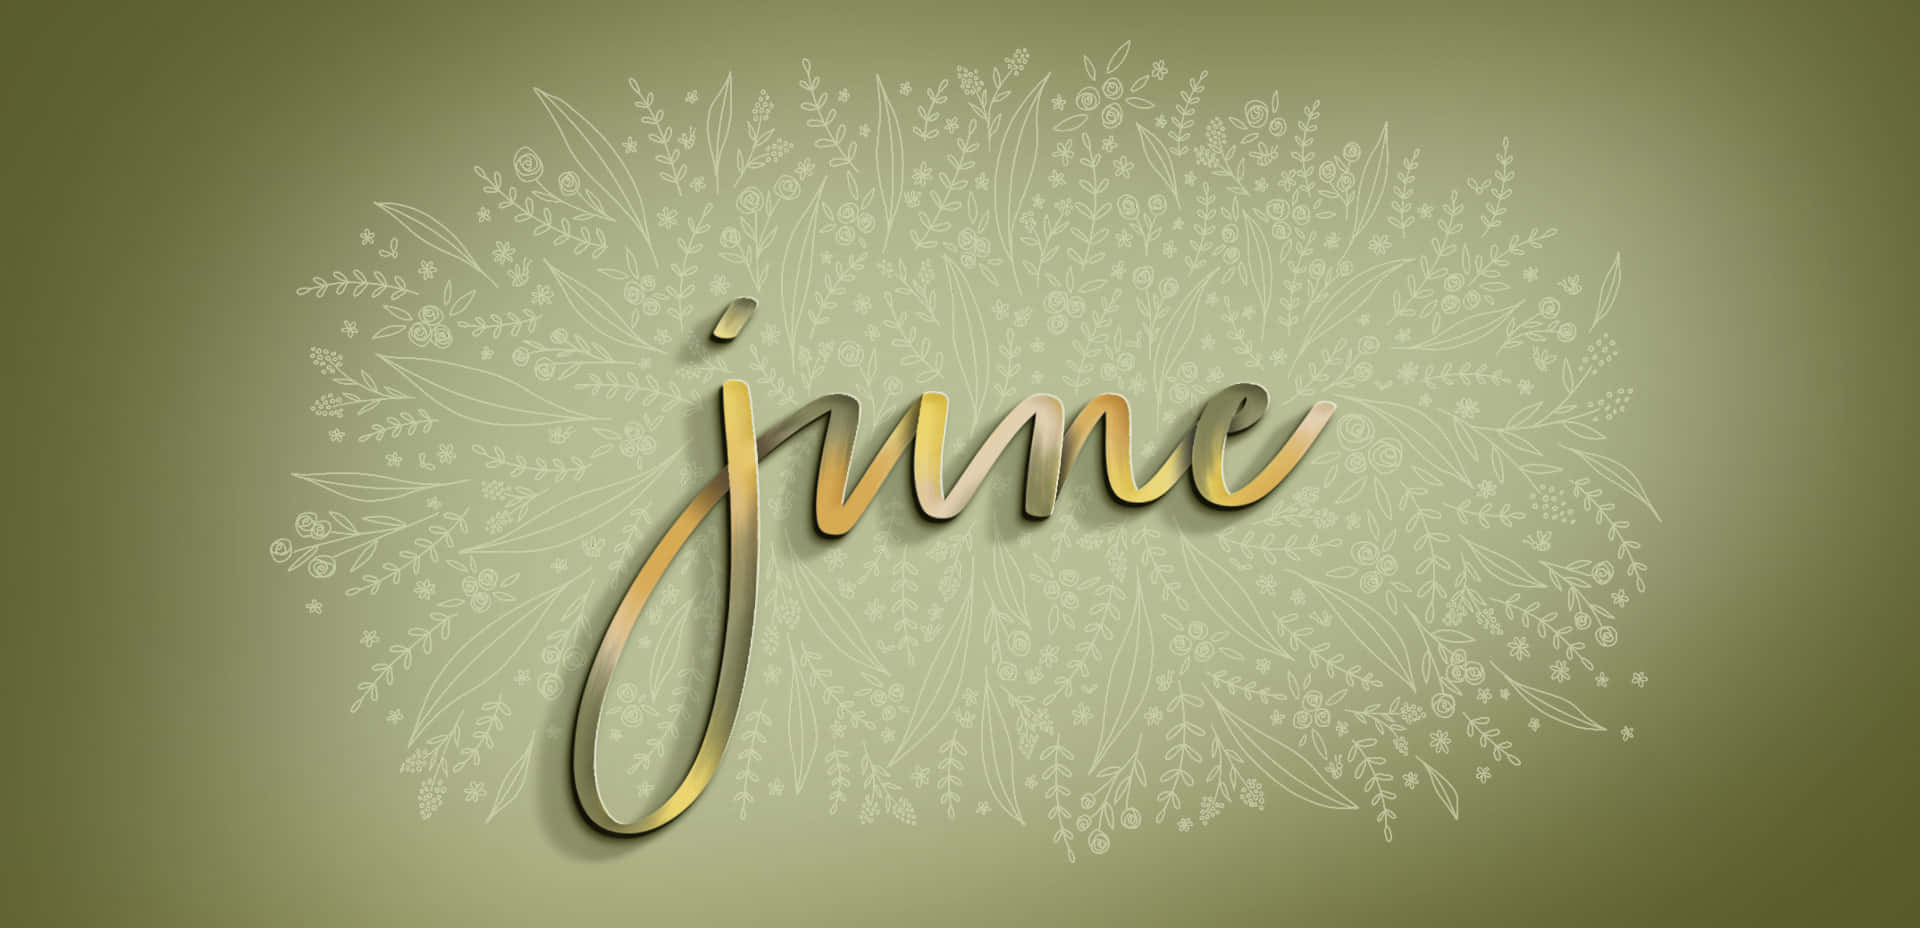 June Desktop Background Floral Design Wallpaper